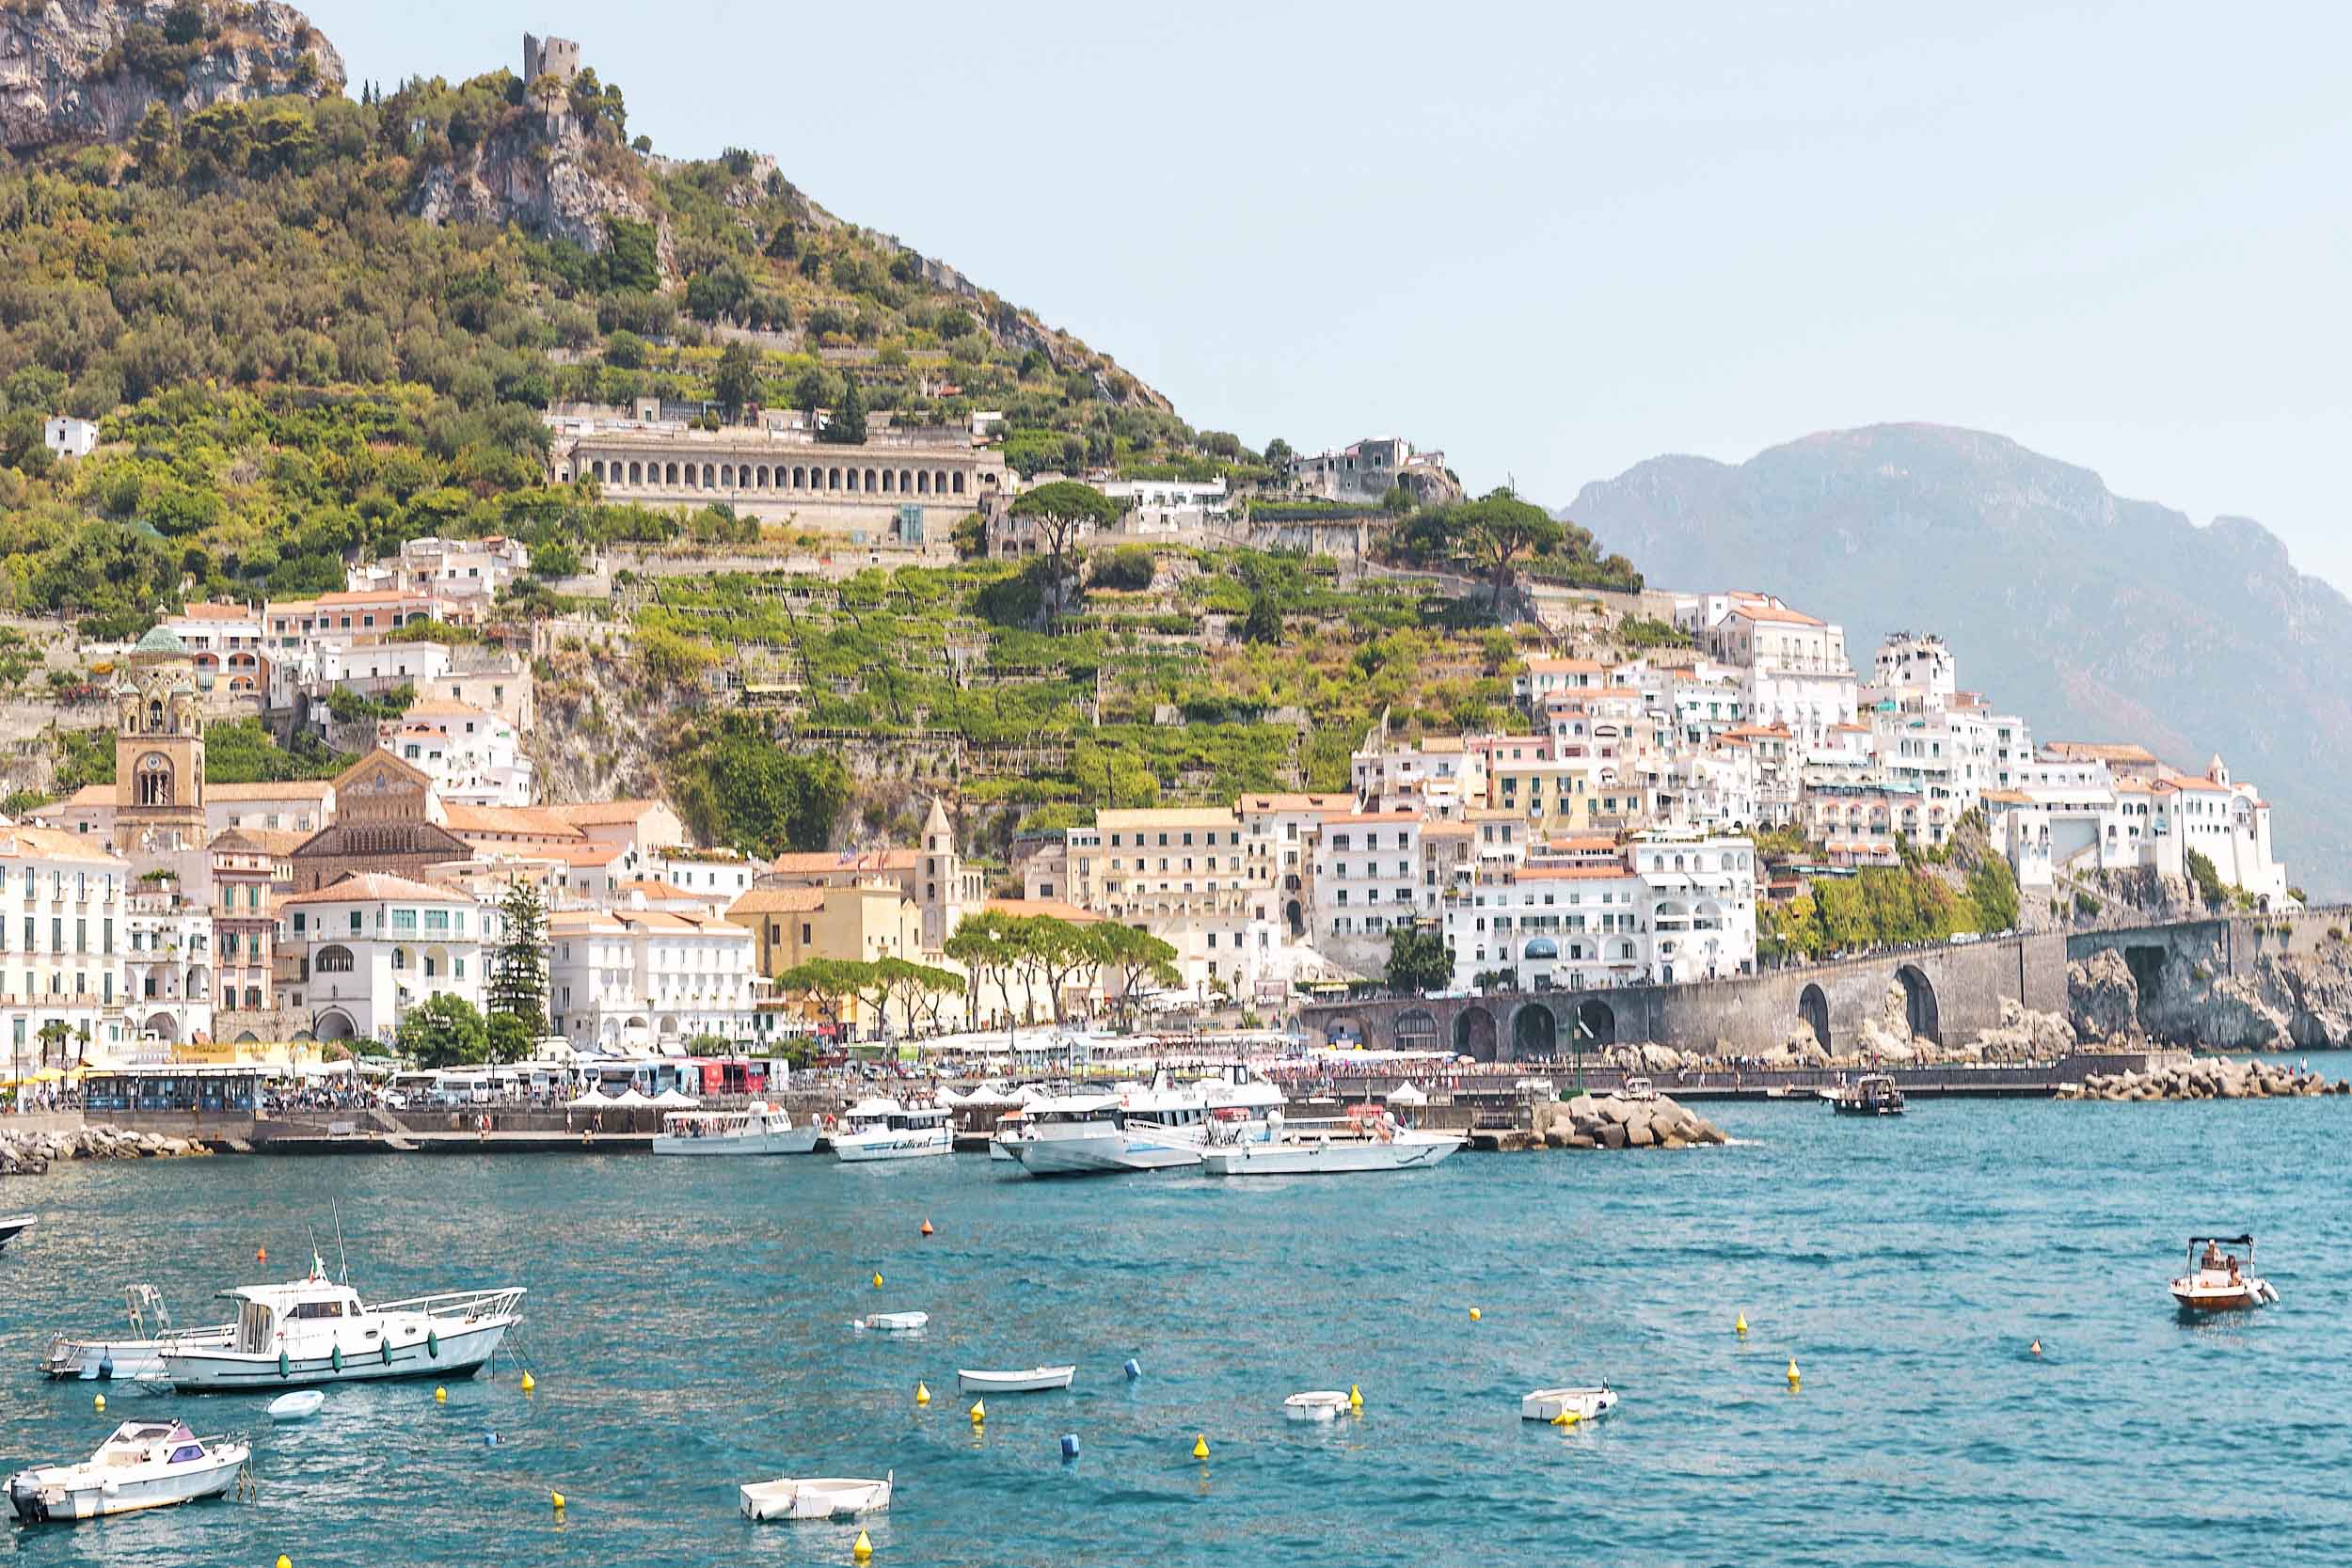 The town of Amalfi on the Amalfi Coast